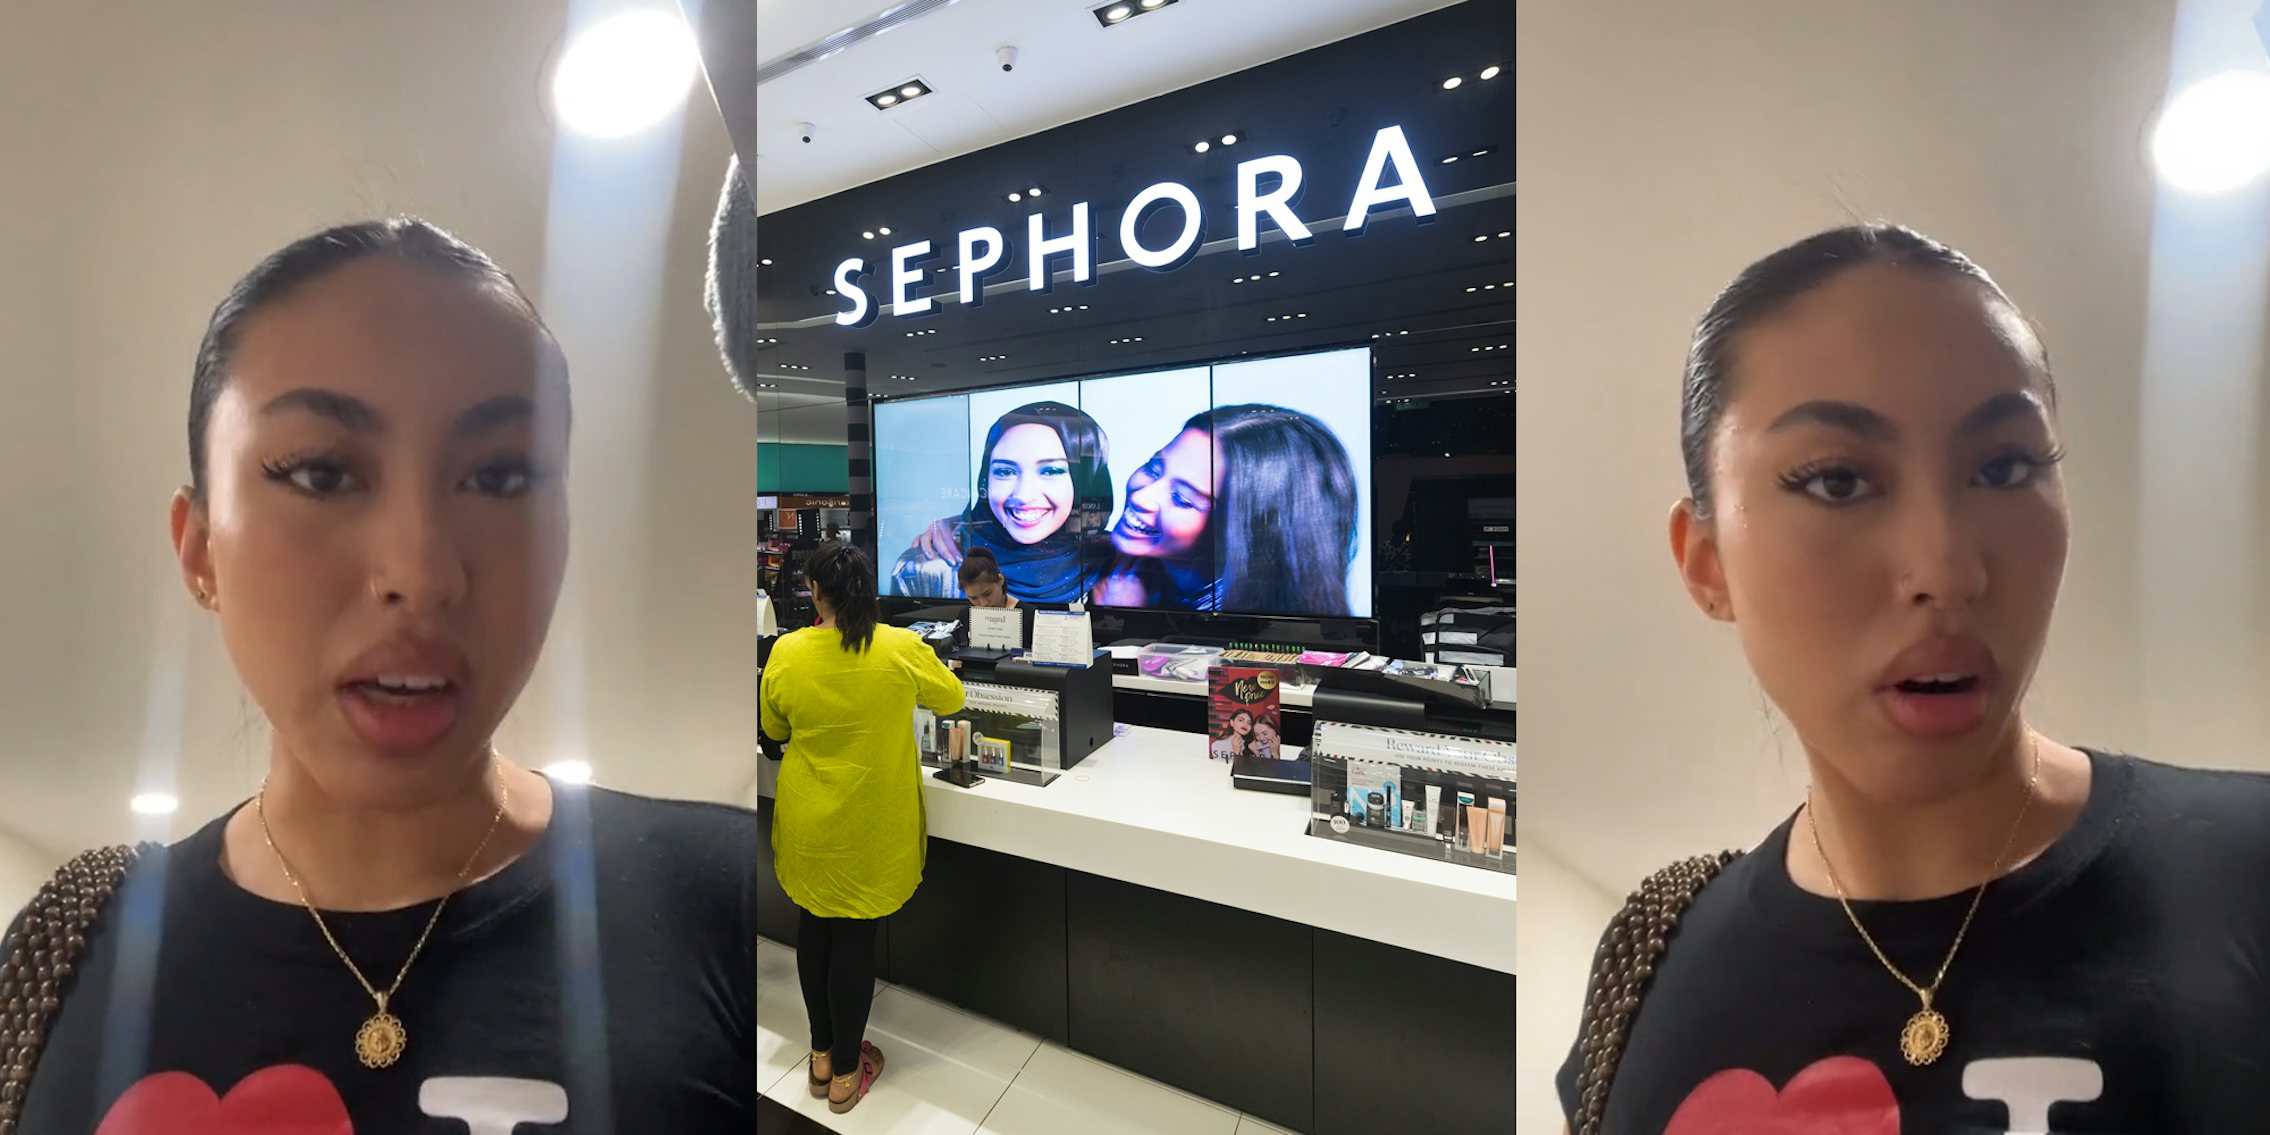 Sephora customer speaking (l) Sephora interior with sign (c) Sephora customer speaking (r)